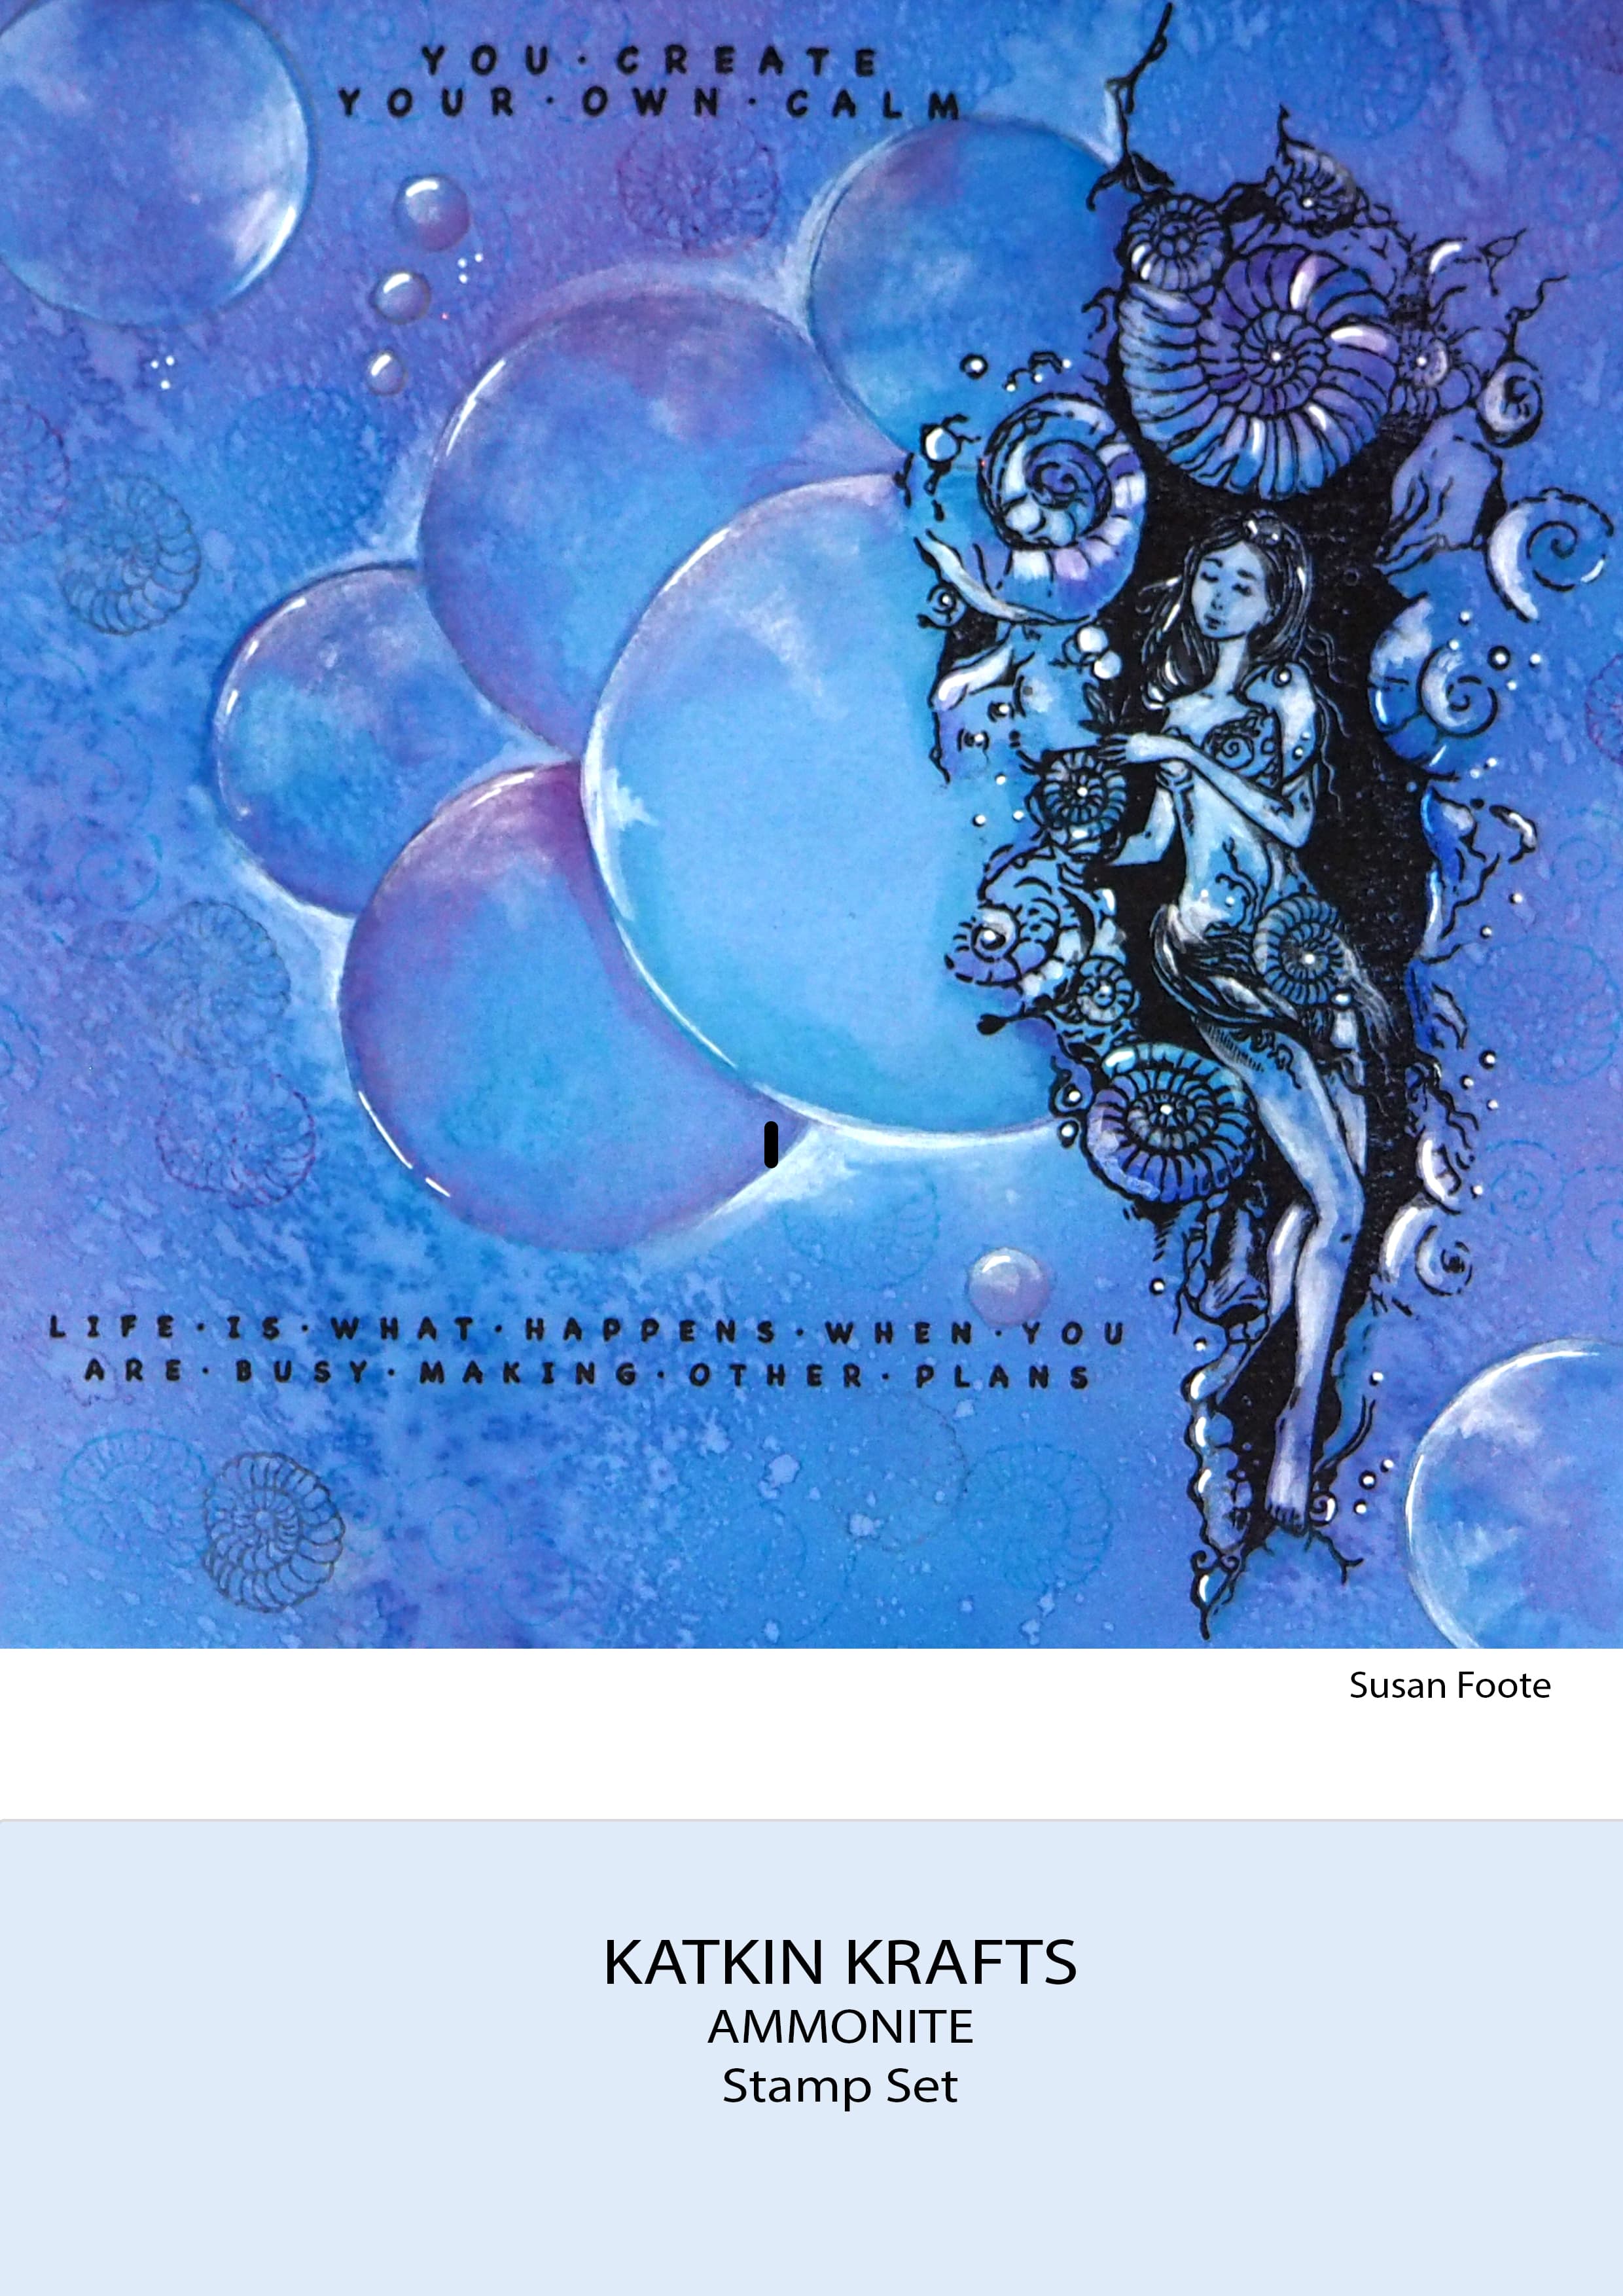 Katkin Krafts Ammonite 6 in x 8 in Clear Stamp Set